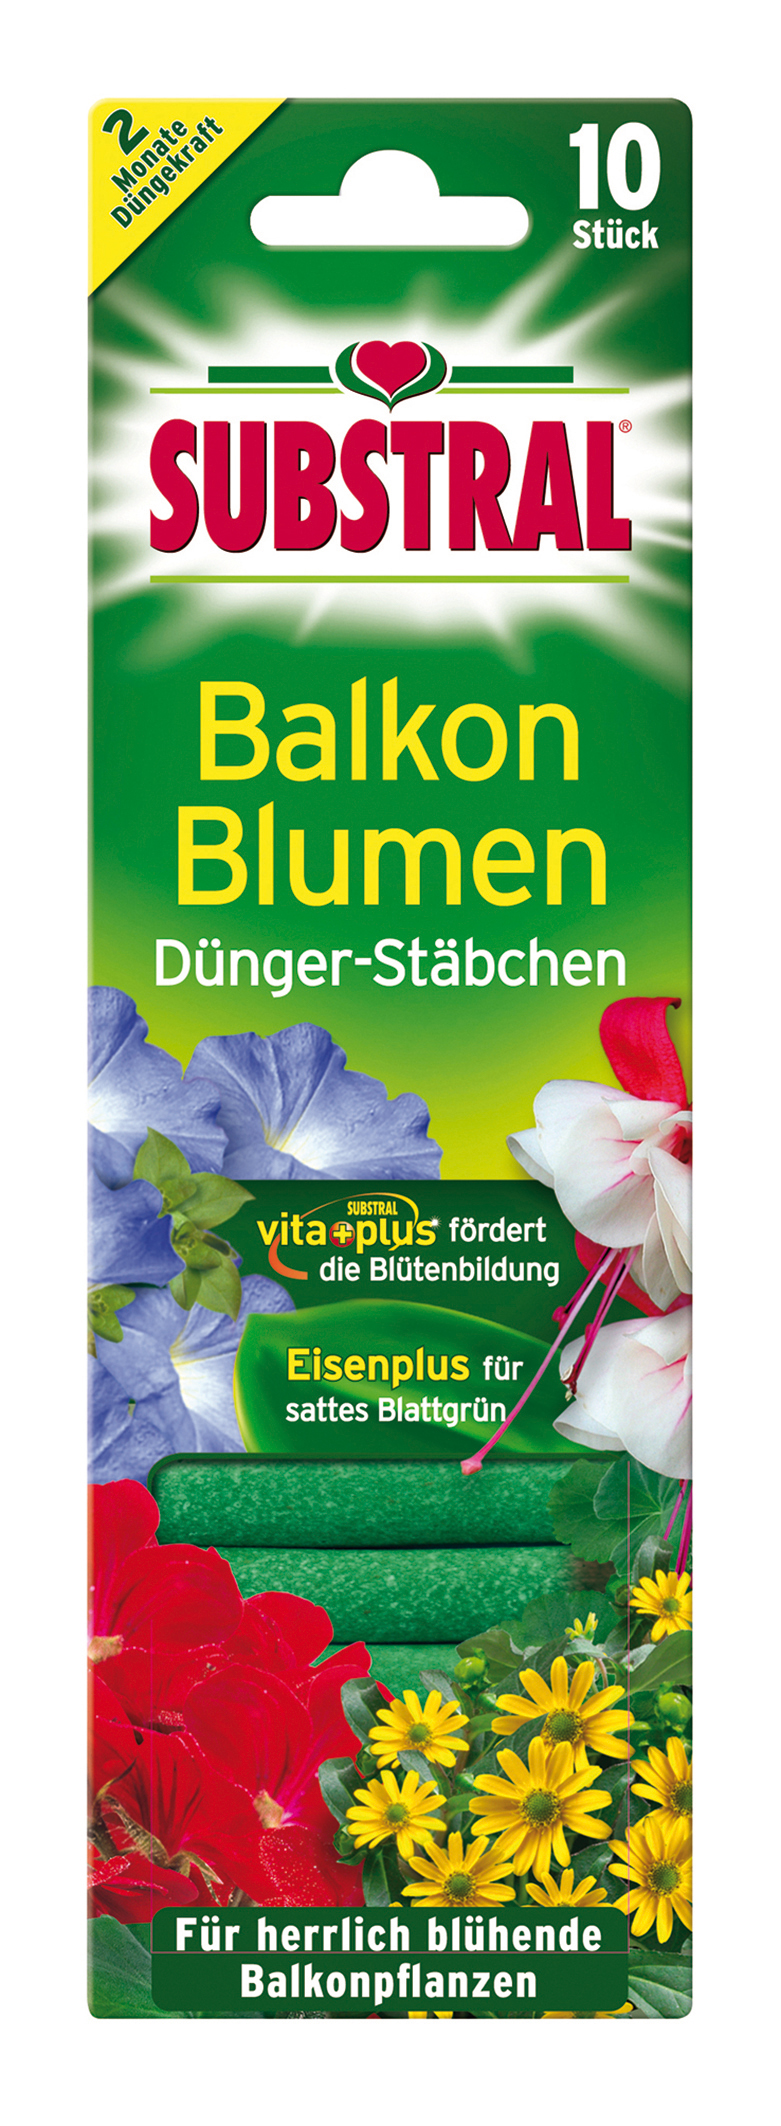 Substral Balkonblumen Dünger-Stäbchen 10 Stück